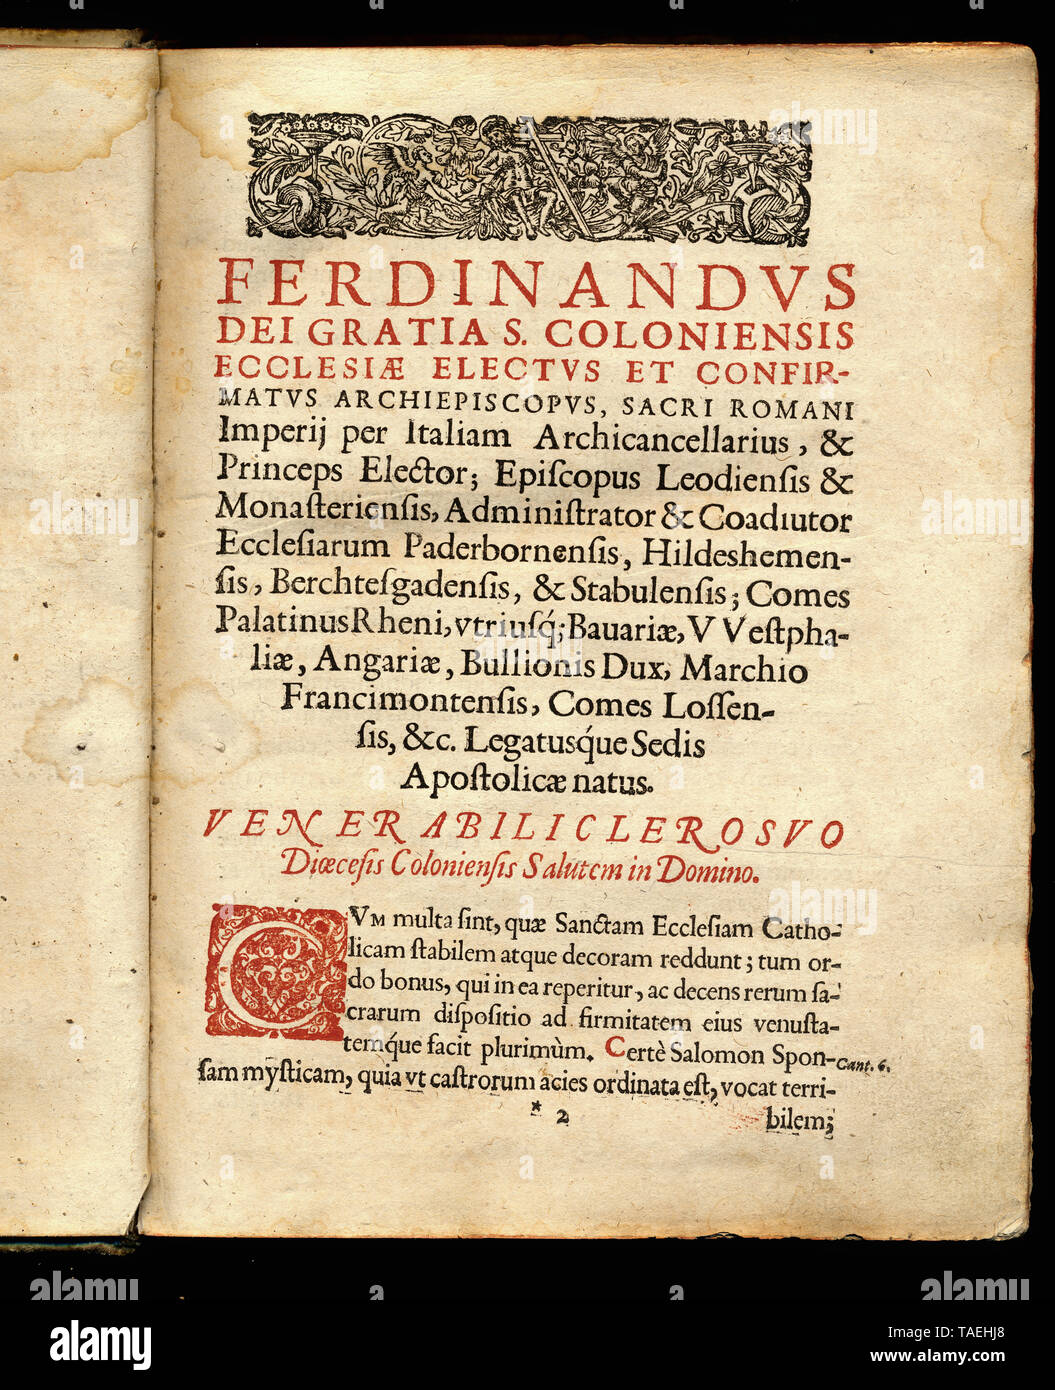 Historisches Kirchenbuch in lateinischer Sprache aus Köln, 1637 Stock Photo